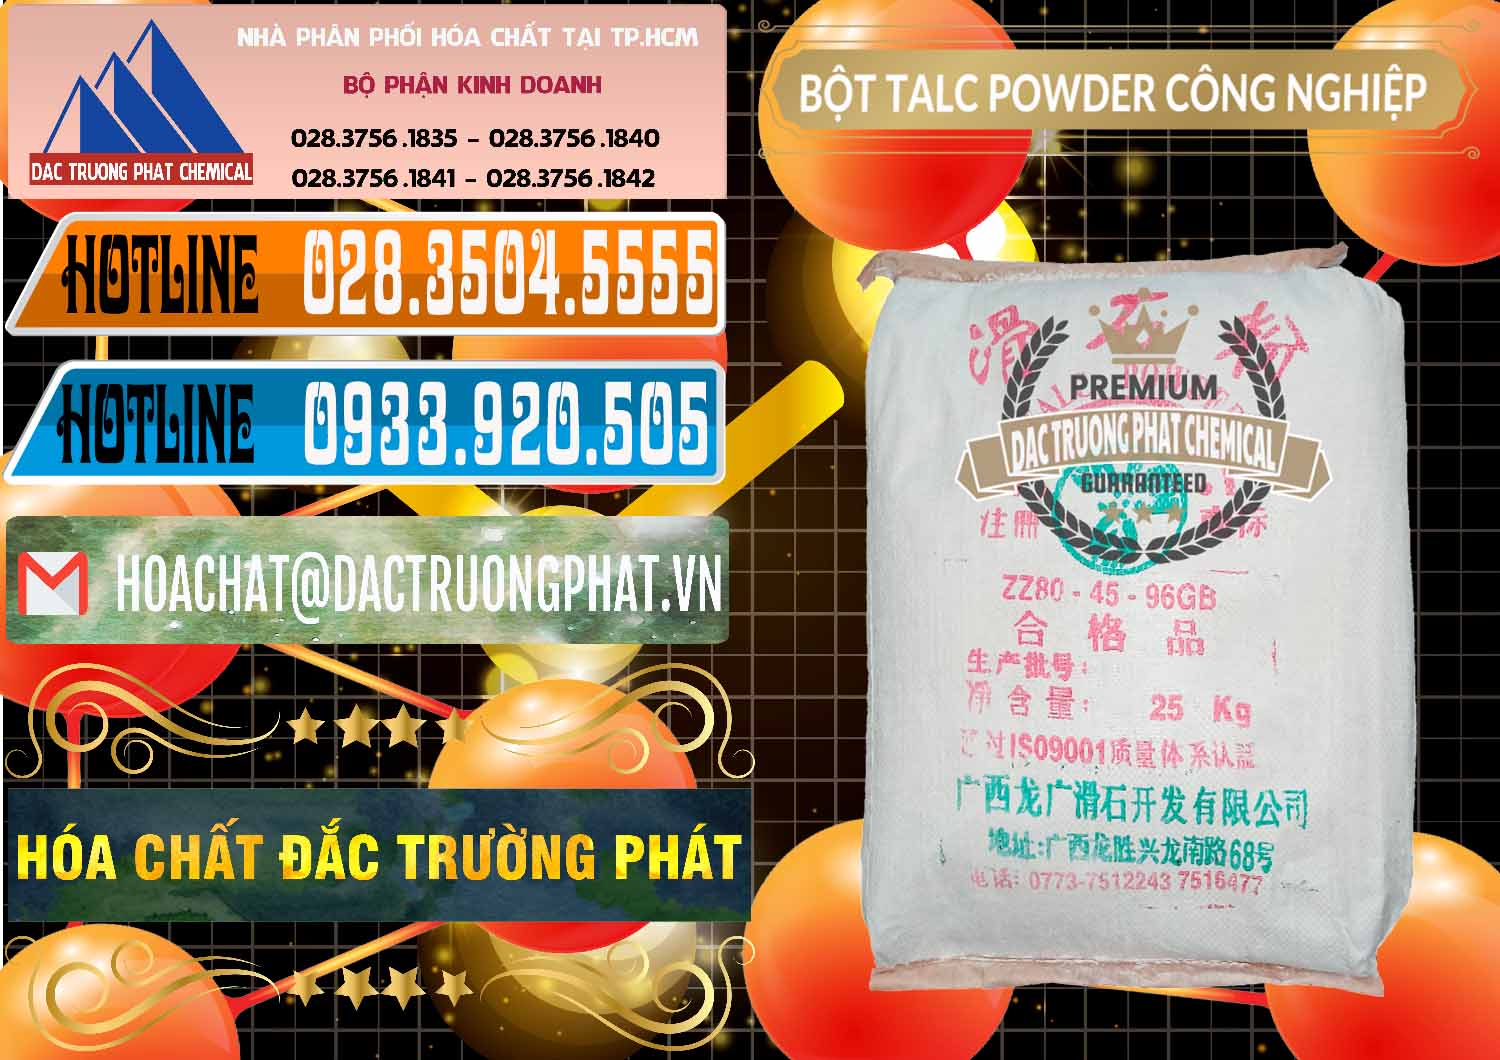 Cty bán và cung cấp Bột Talc Powder Công Nghiệp Trung Quốc China - 0037 - Nhà cung cấp ( nhập khẩu ) hóa chất tại TP.HCM - stmp.net